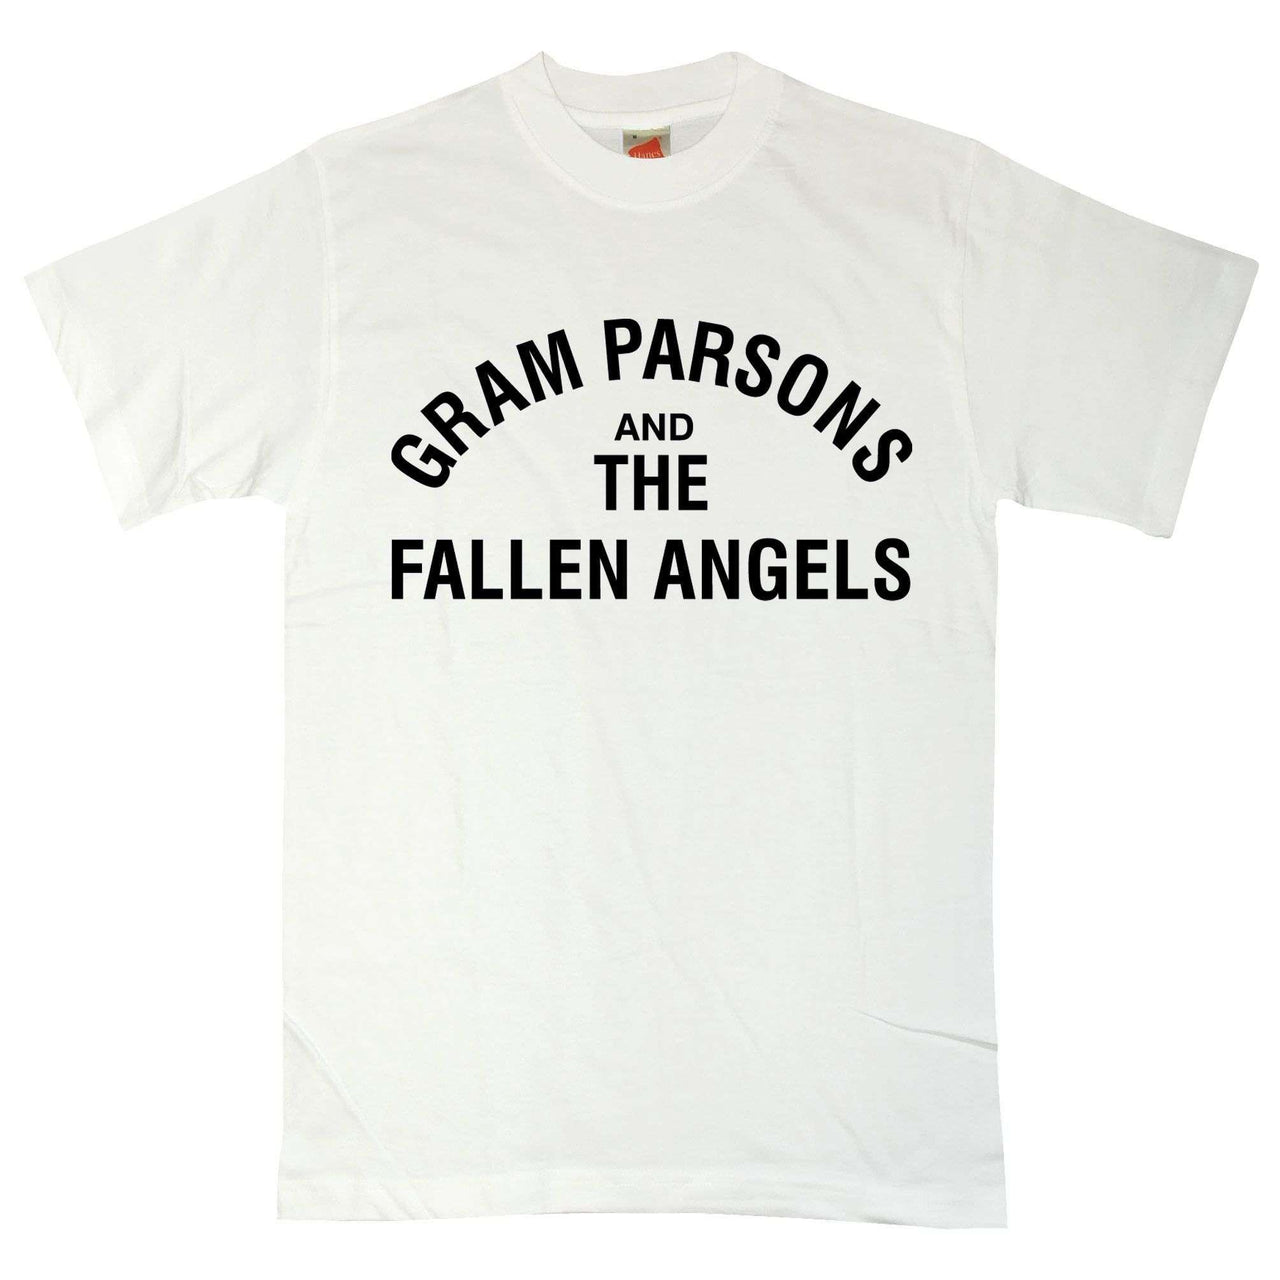 Gram Parsons & The Fallen Angels T-Shirt For Men 8Ball